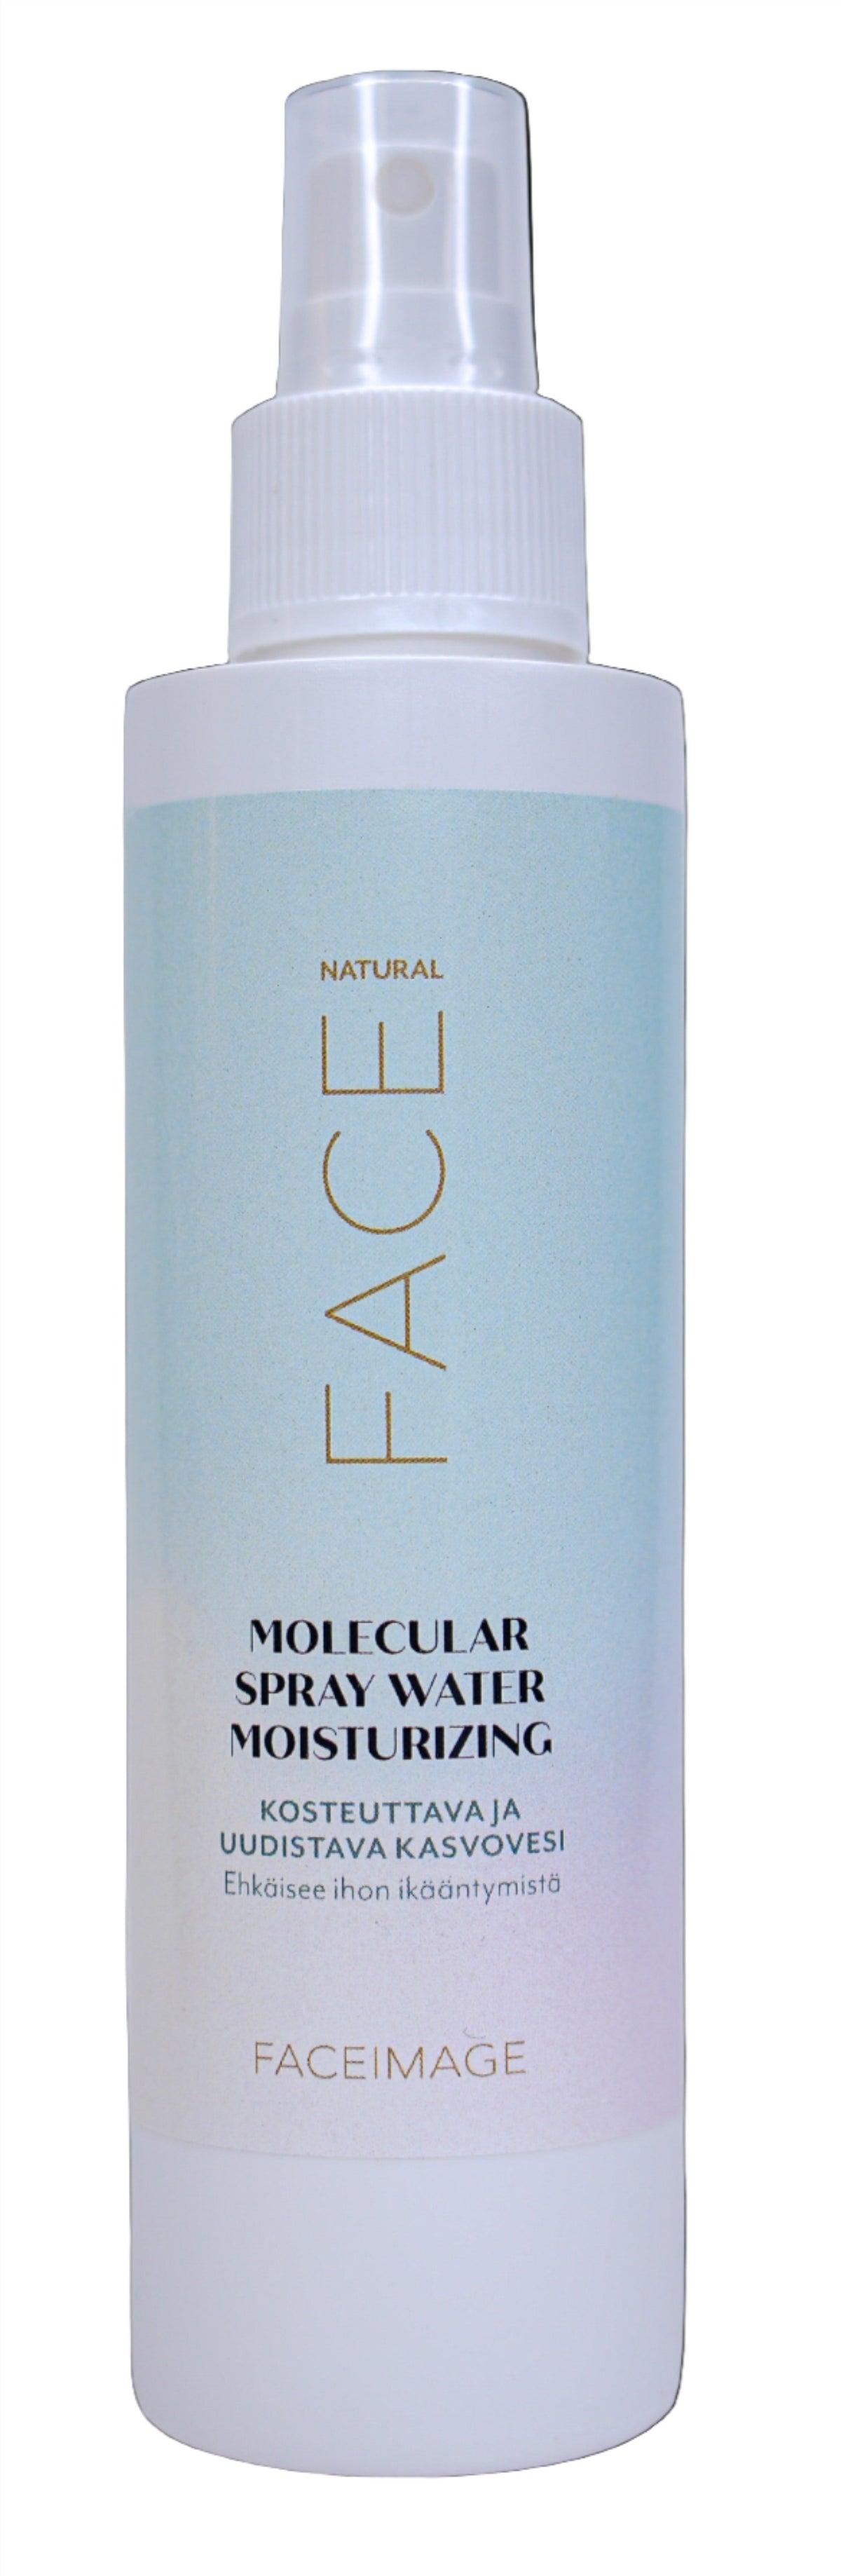 Faceimage Molecular Spray Water Moisturizing - Kosteuttava Kasvovesi 150 ml